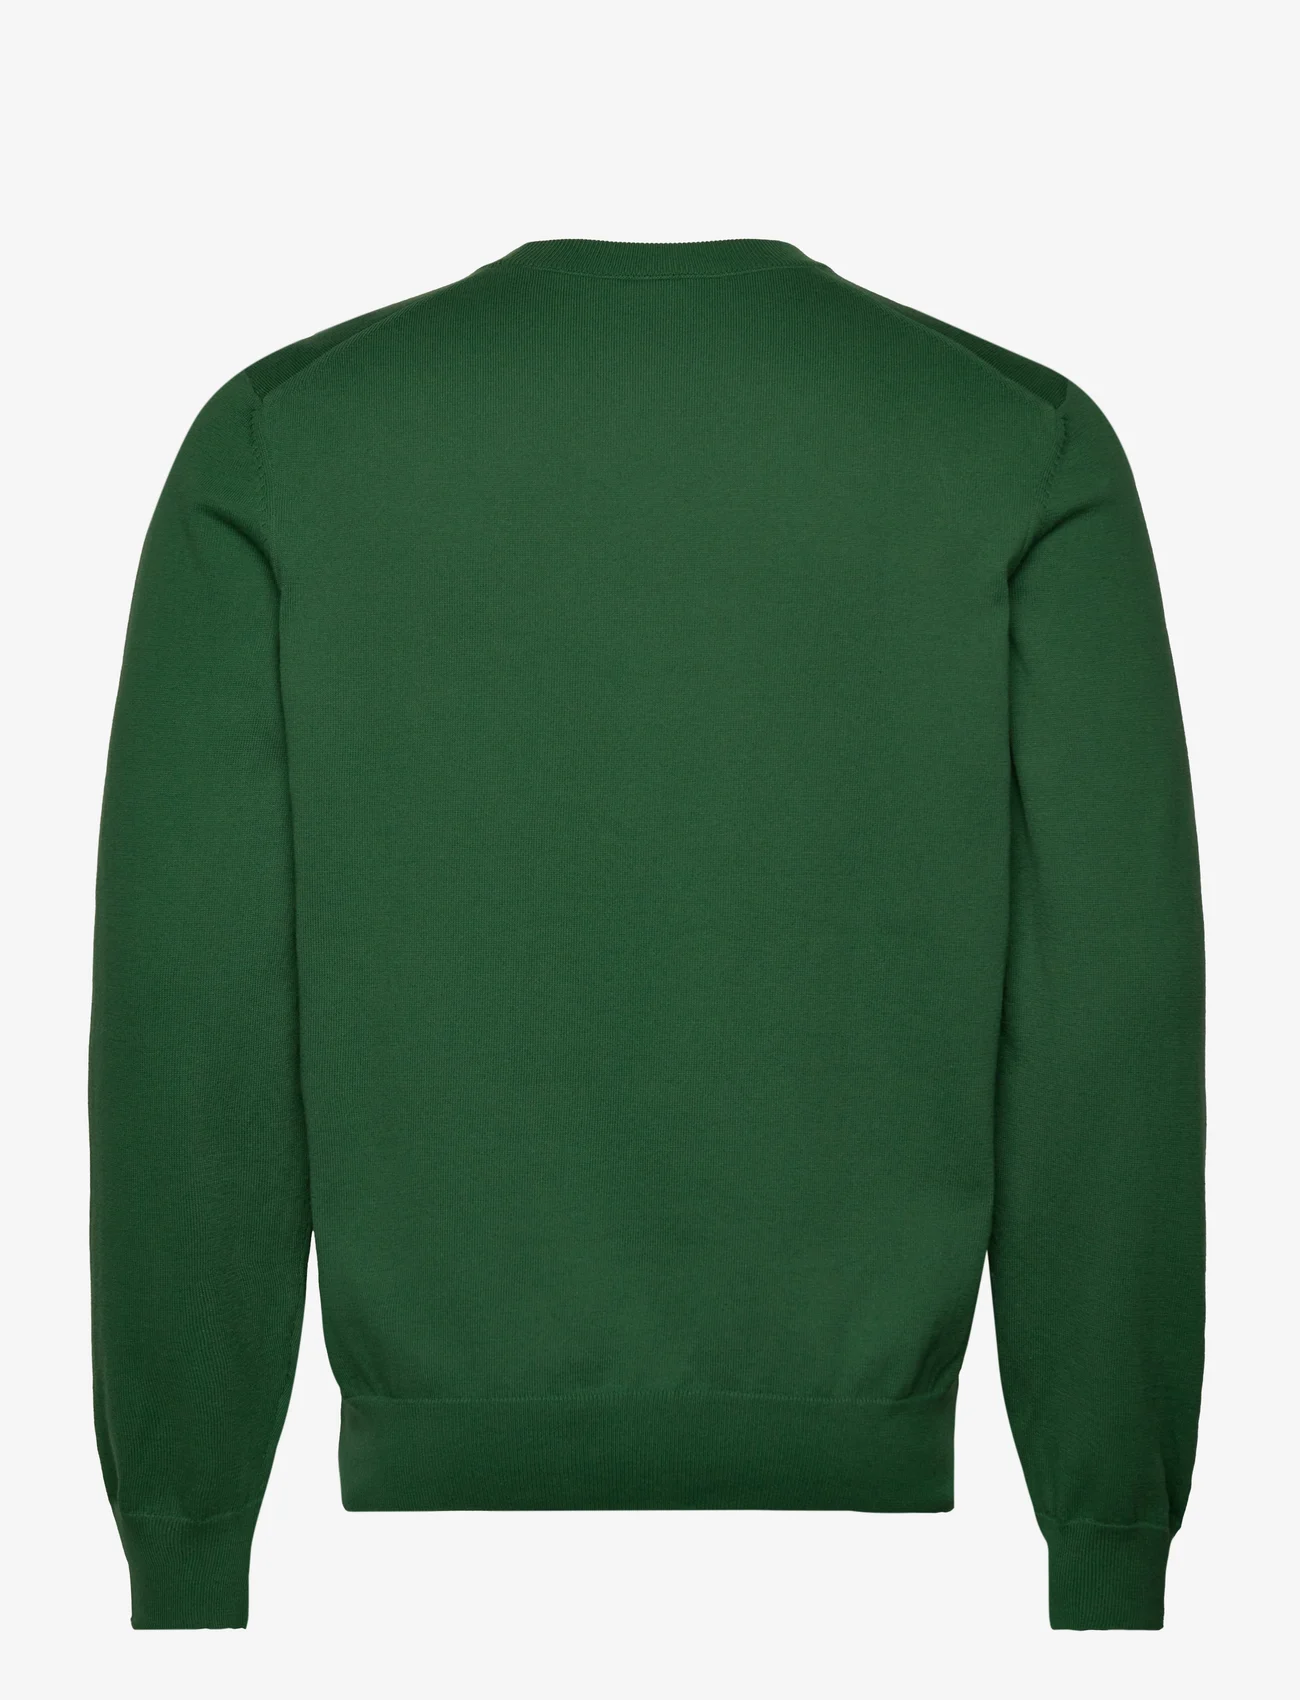 BOSS - Pacello-L - knitted v-necks - open green - 1